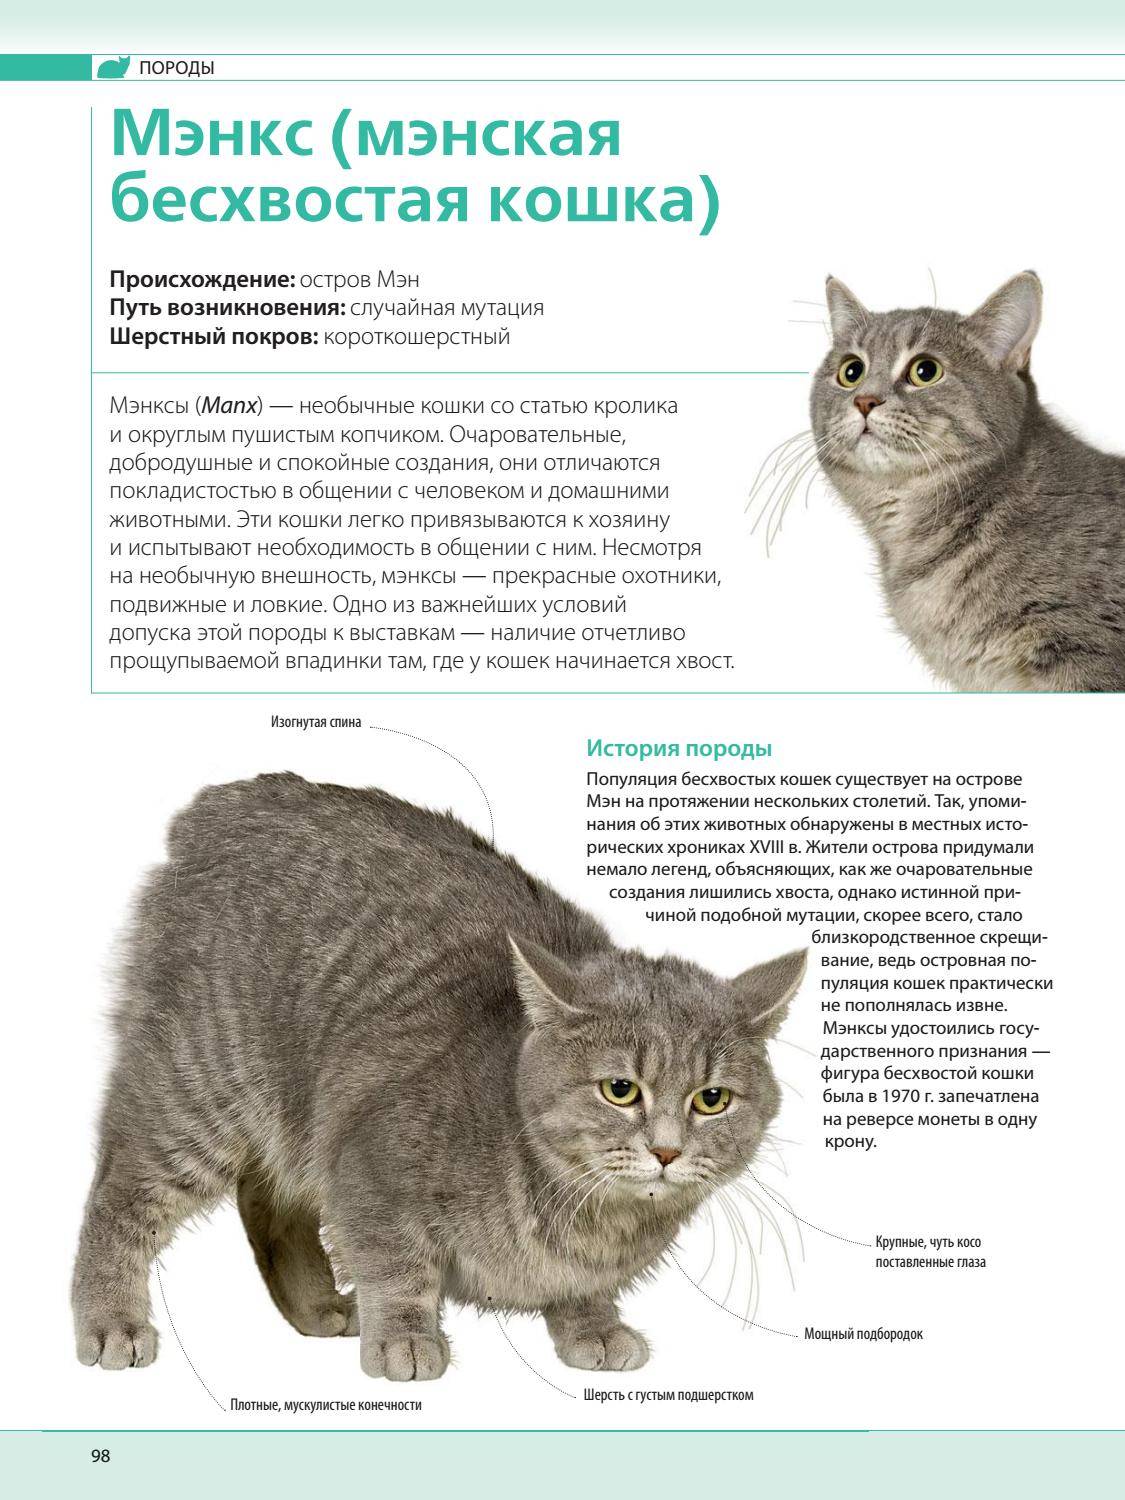 Норвежская лесная кошка - 125 фото особенностей породы и особенности воспитания